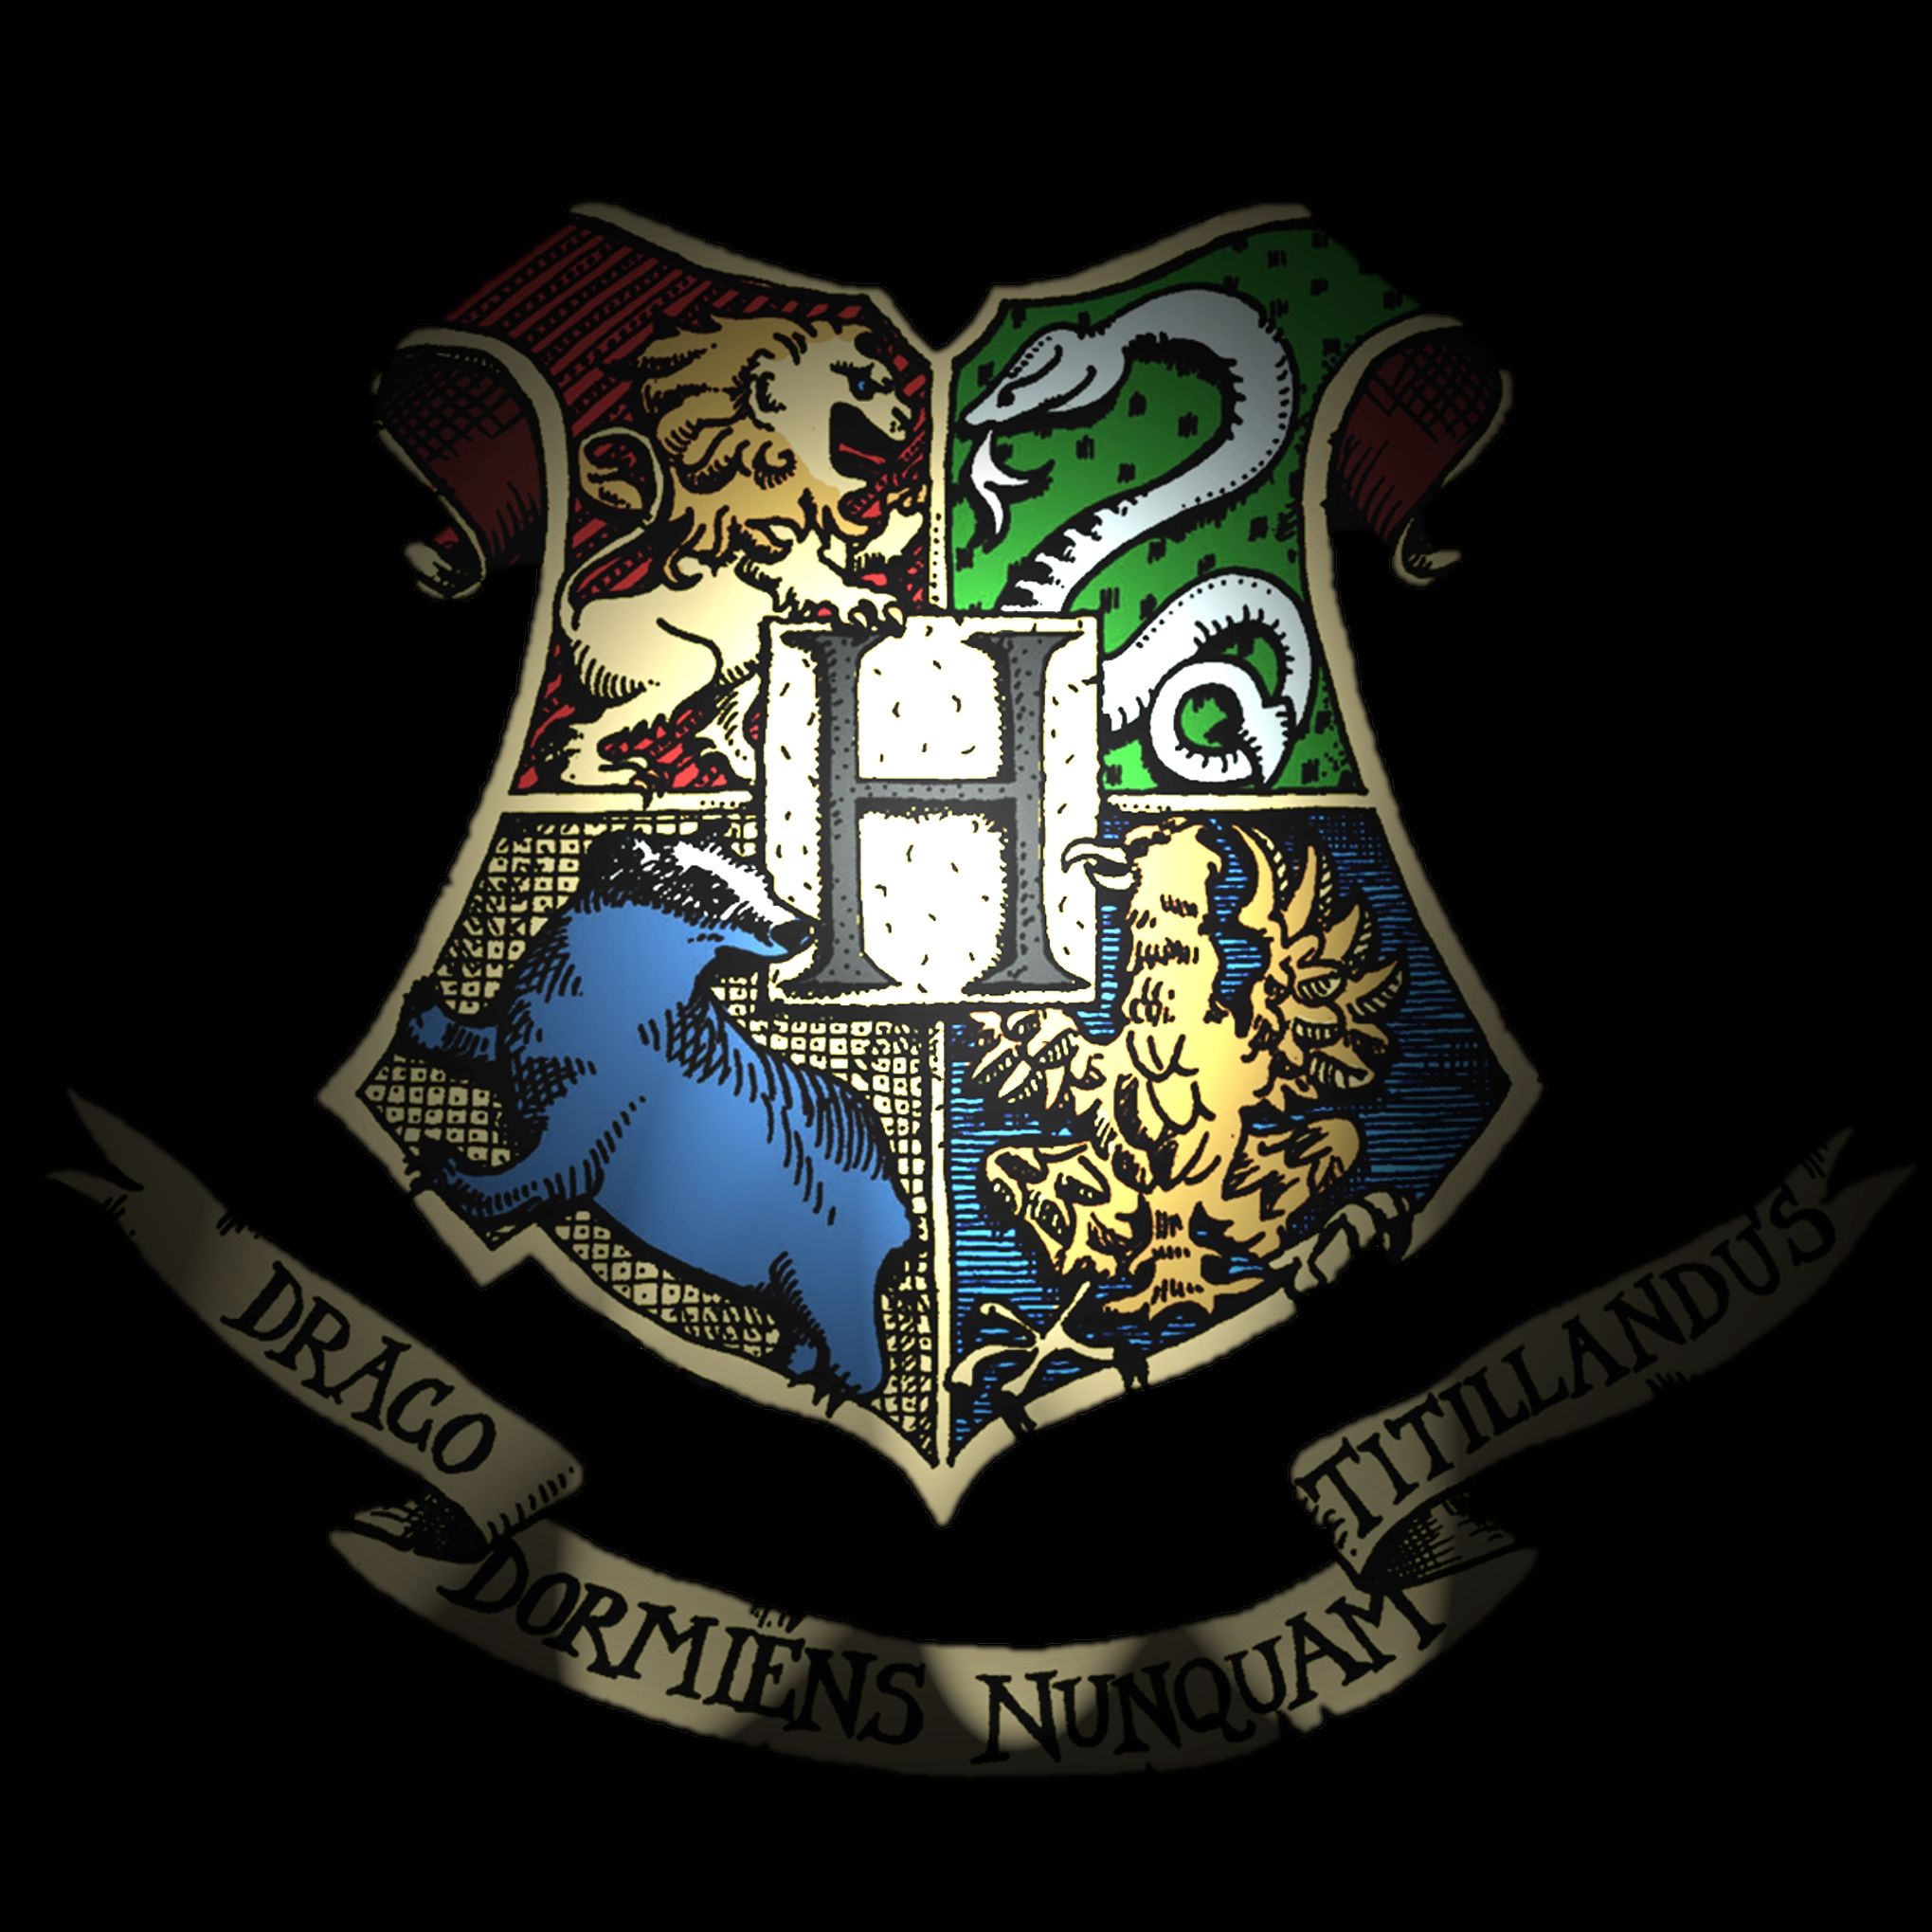 Free download Harry Potter Hogwarts Crest Wallpapers Harry potter